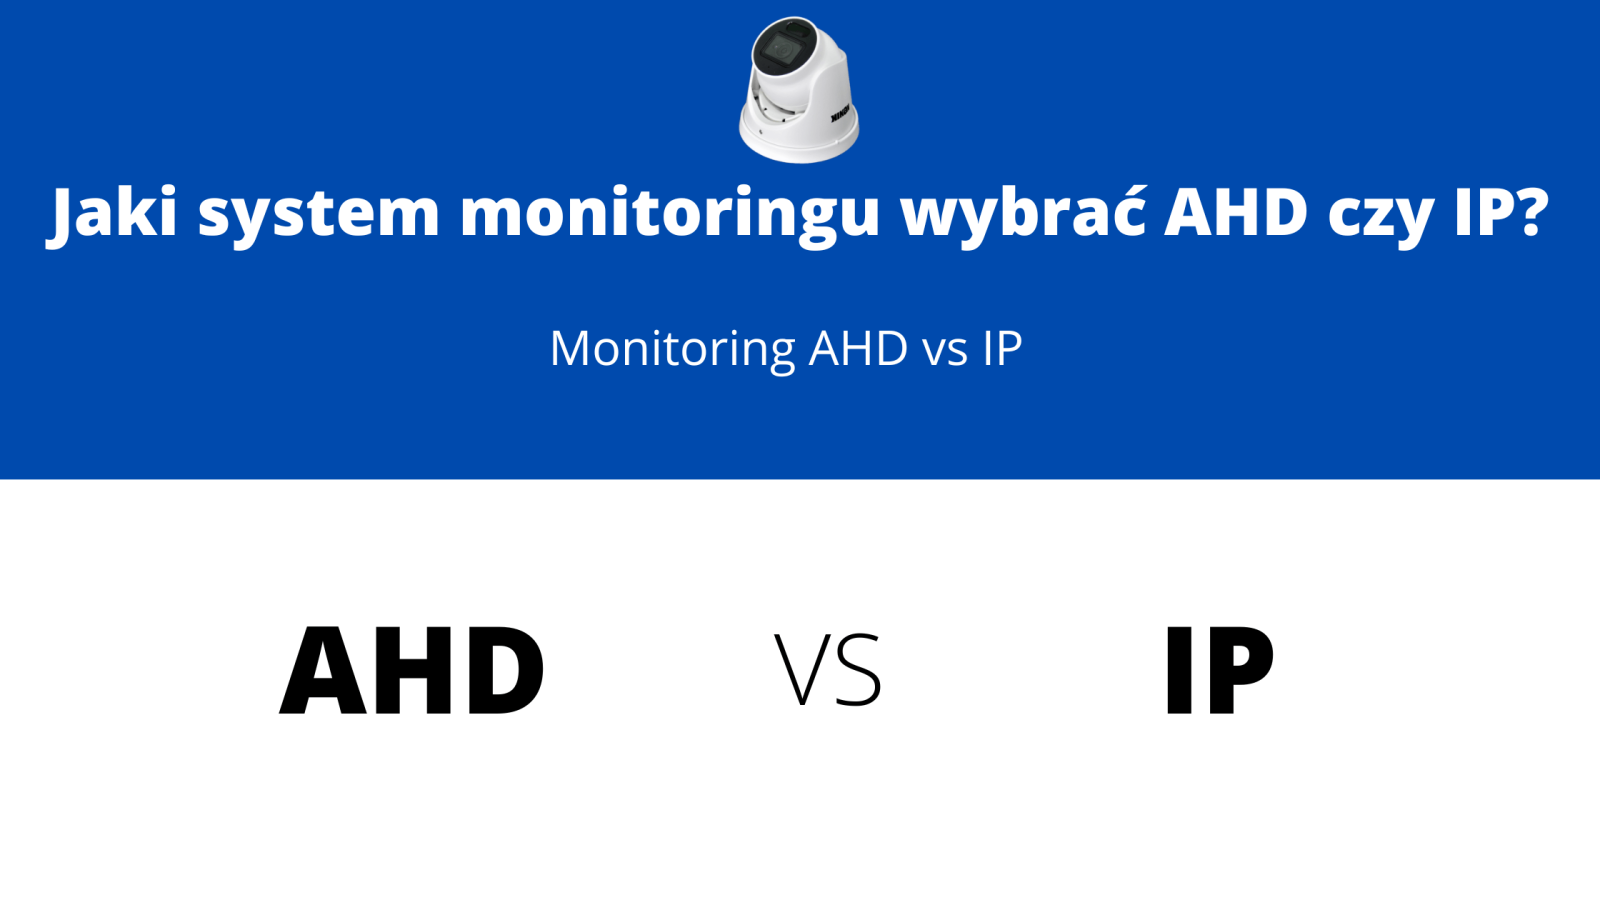 Jaki system monitoringu wybrać AHD czy IP